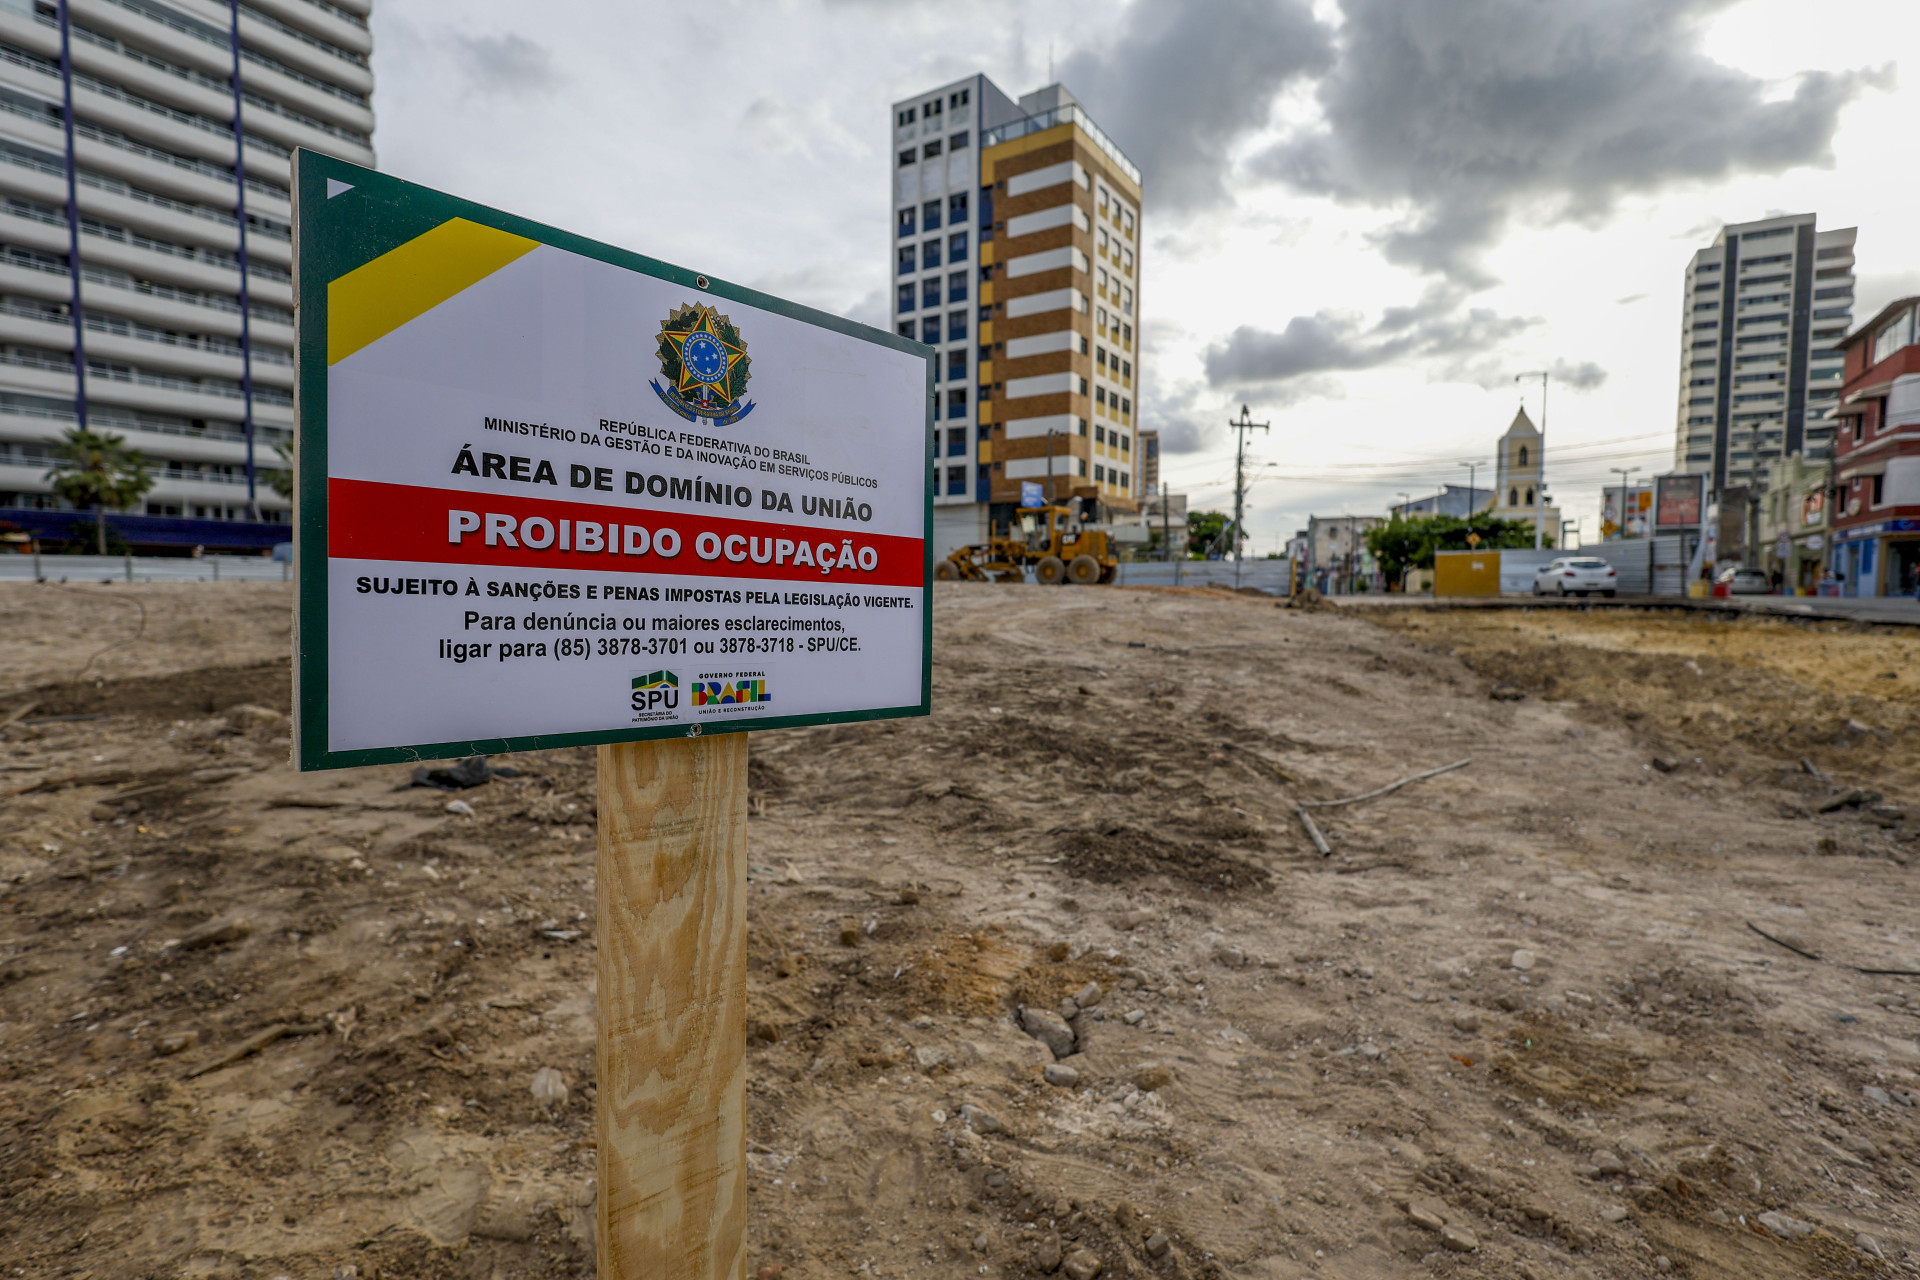 Fortaleza, CE, BR 24.06.07 - Placa da SPU indicando que terreno do Ed São Pedro é área de domínio da união  (Fco Fontenele O POVO) (Foto: FCO FONTENELE)